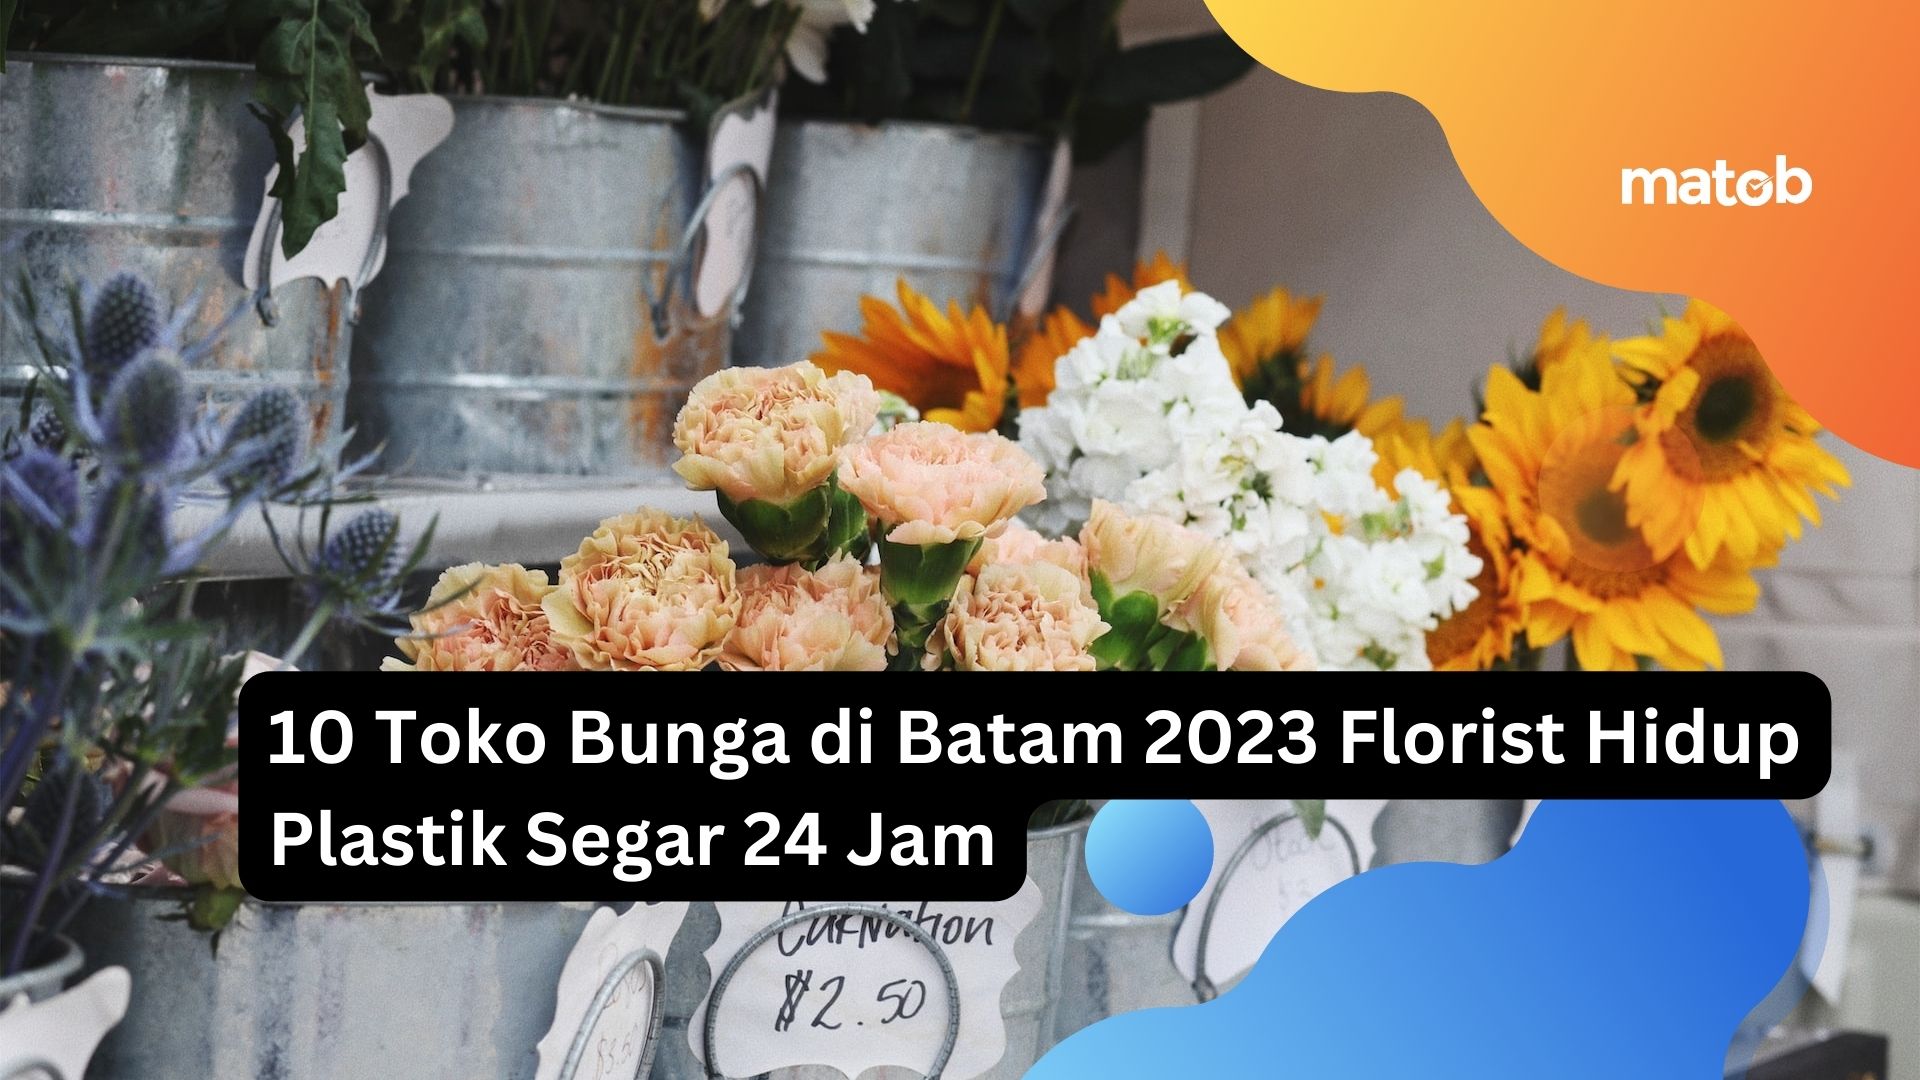 10 Toko Bunga di Batam 2023 Florist Hidup Plastik Segar 24 Jam